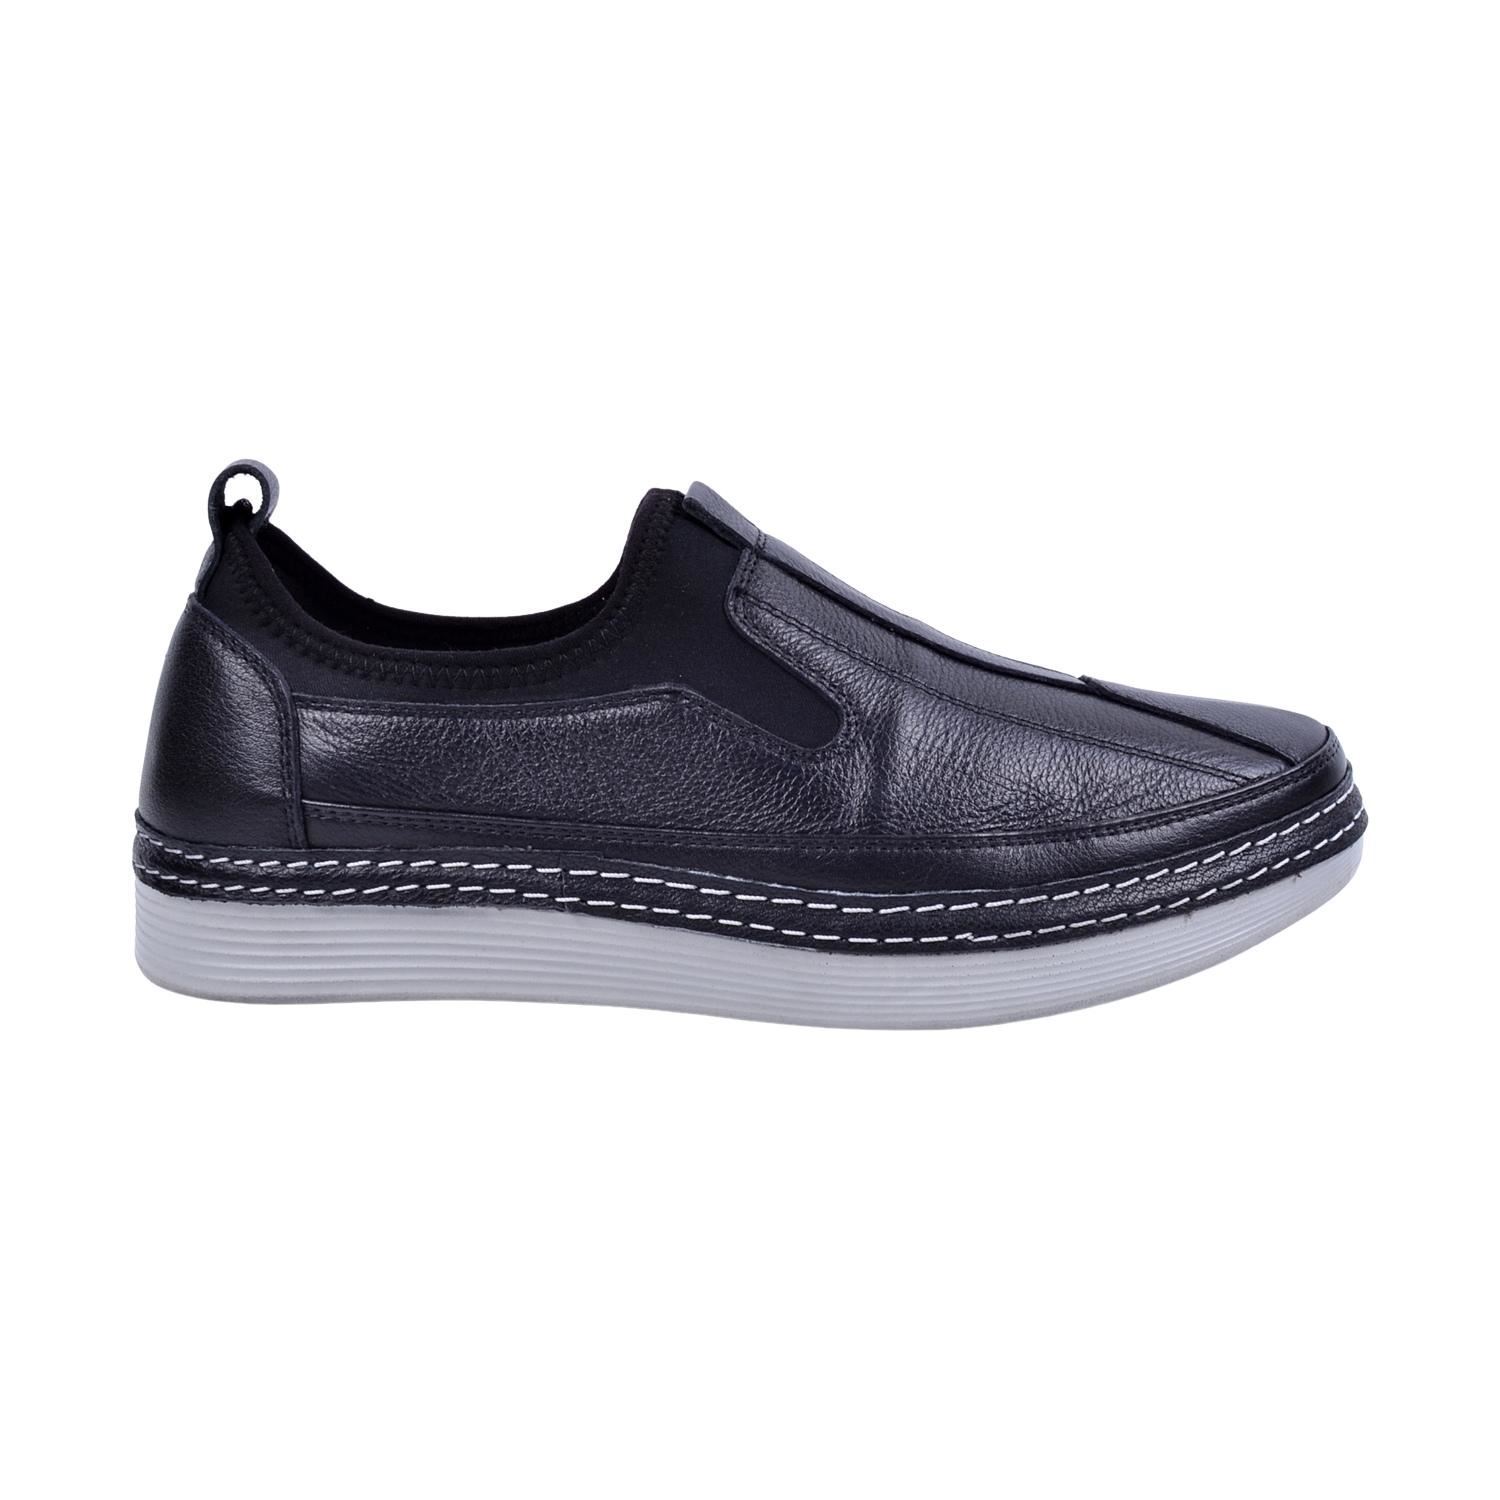 İskarpin 1020 Siyah Erkek Deri Ayakkabı